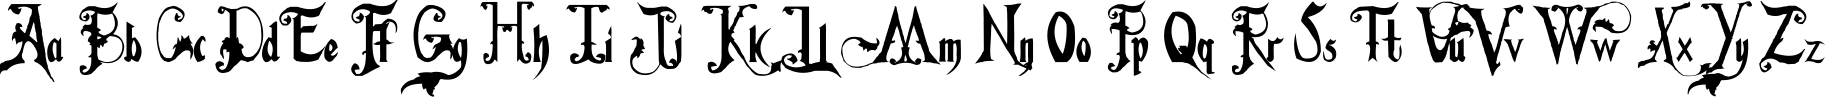 Пример написания английского алфавита шрифтом Fiddums Family